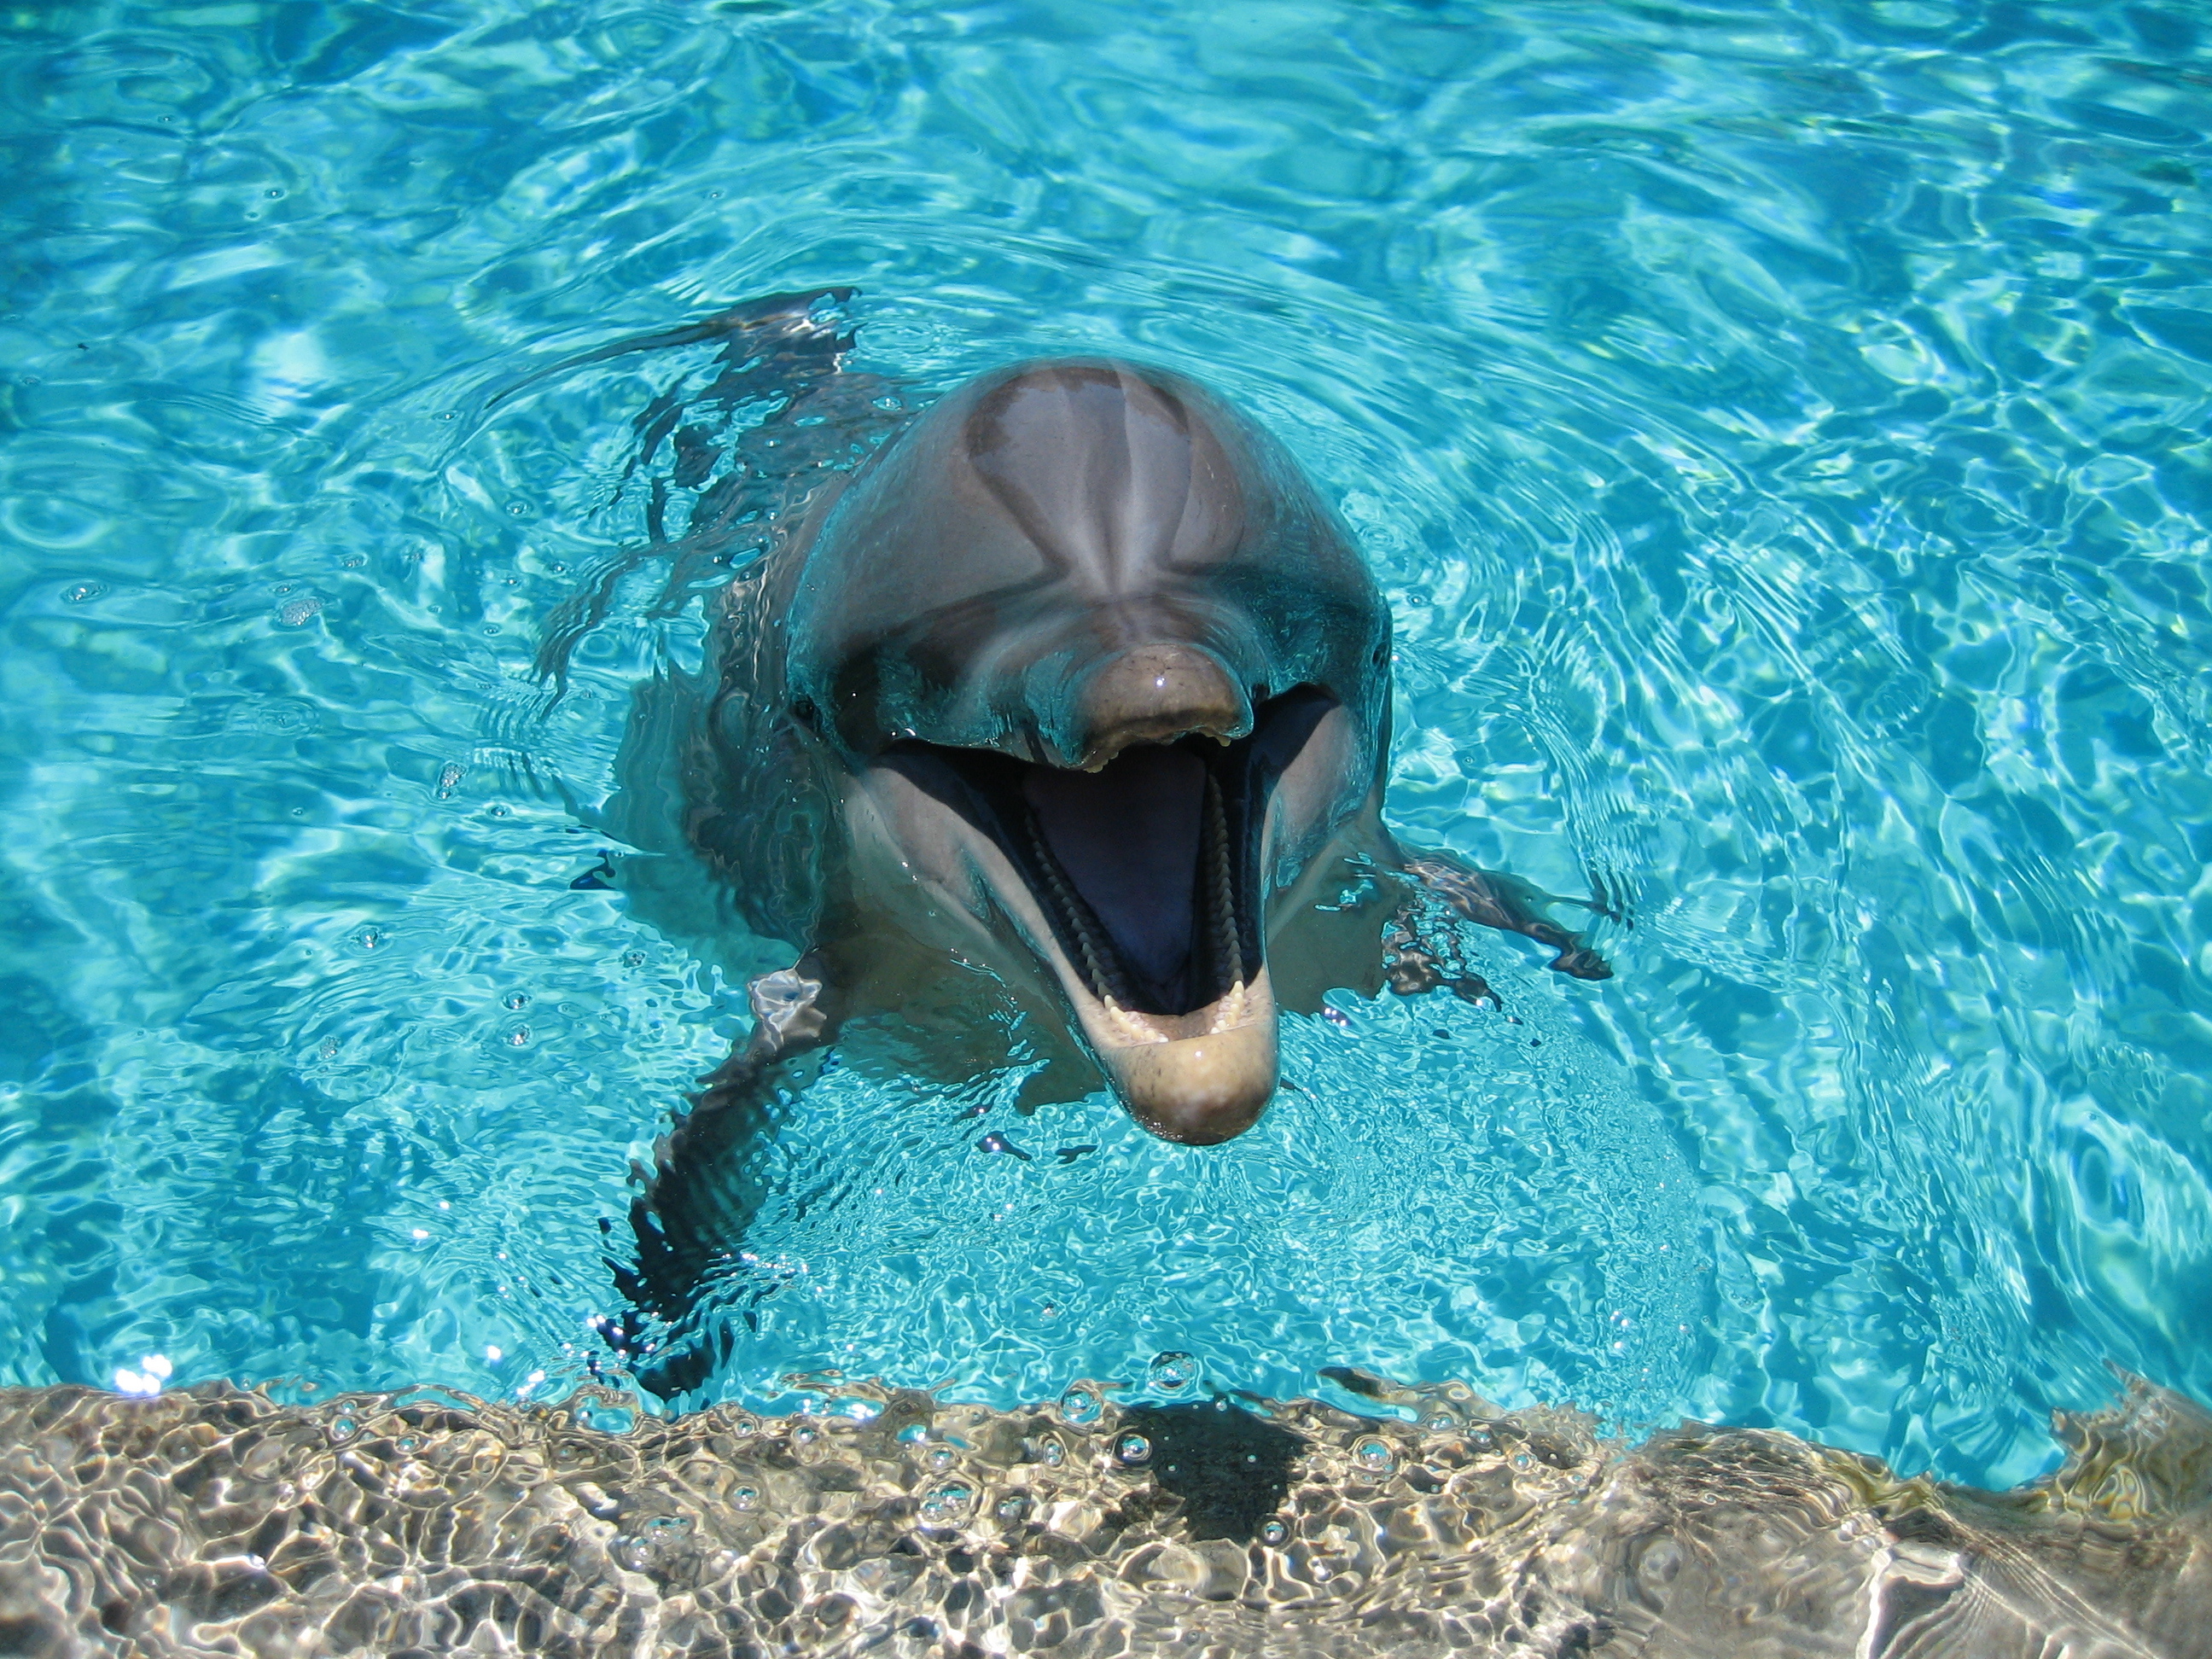 Скачать обои Дельфин на телефон бесплатно